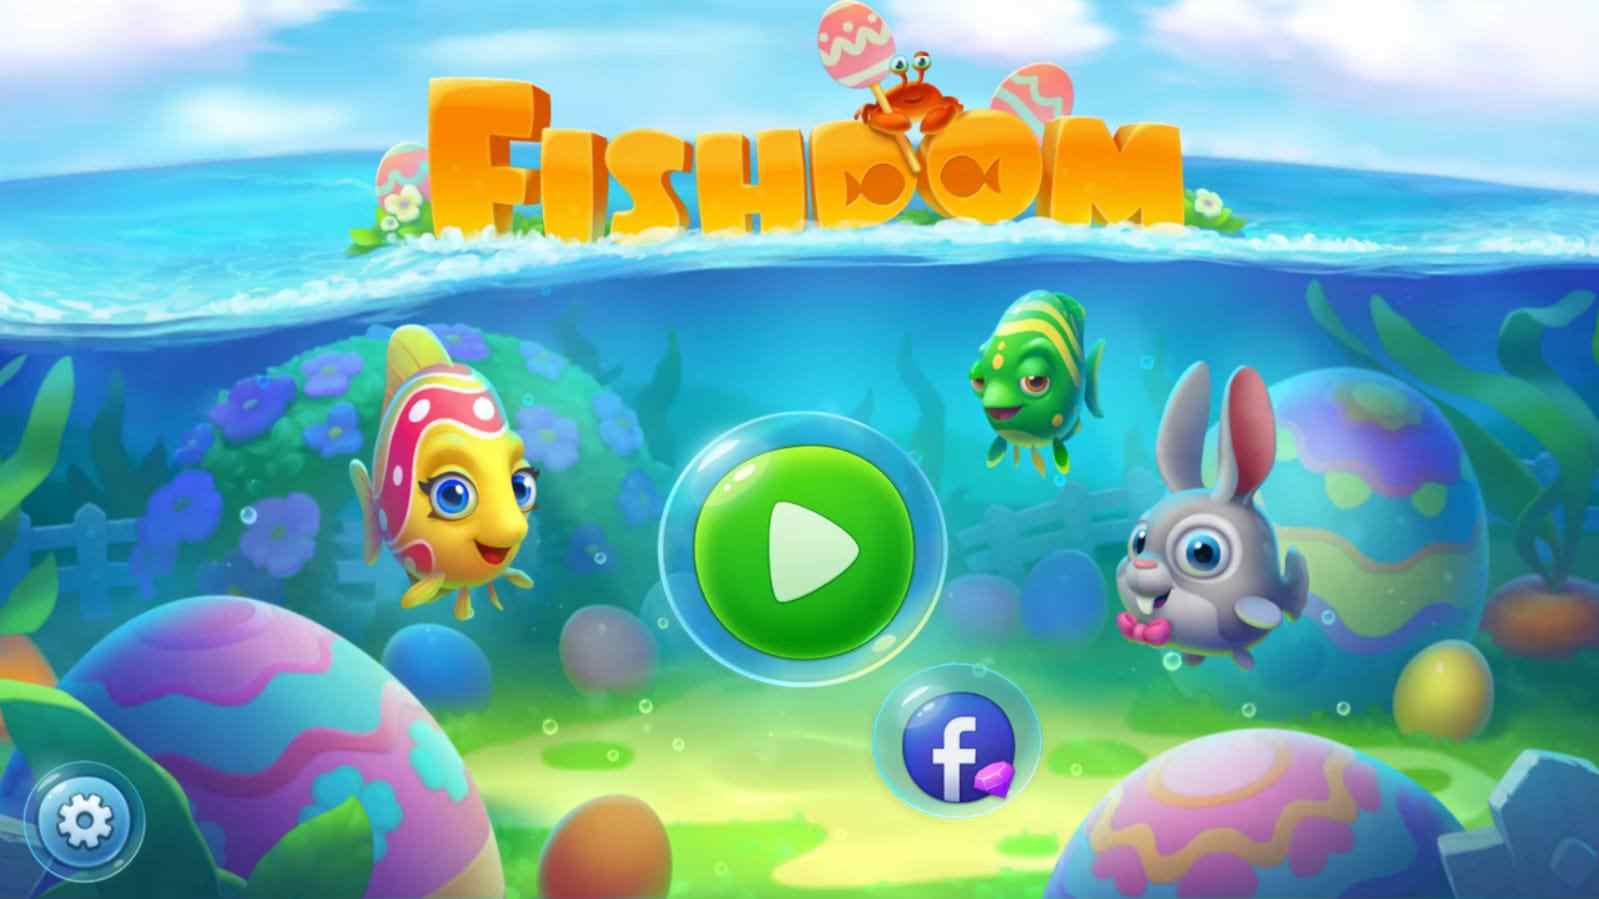 Fishdom 8.2.2.0 MOD Menu VIP, Rất Nhiều Tiền, Kim Cương APK